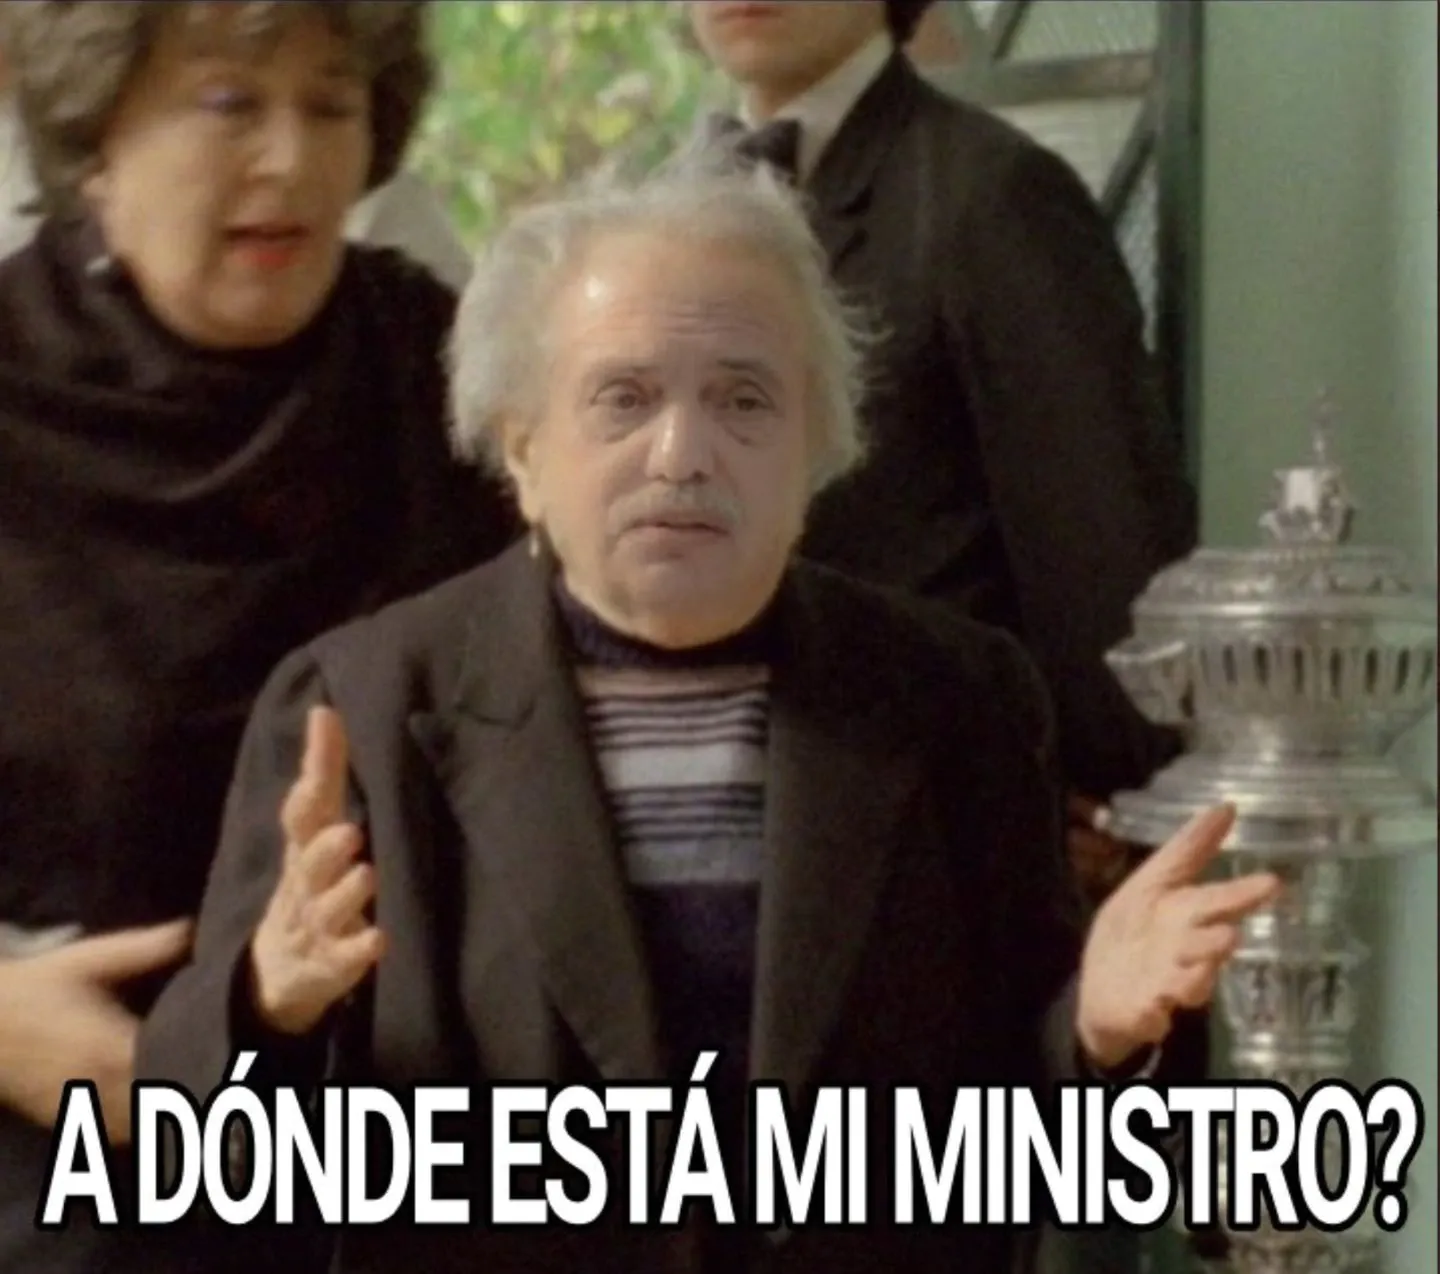 Martín Guzmán renunció como Ministro de Economía y los memes se hicieron sentir en las redes